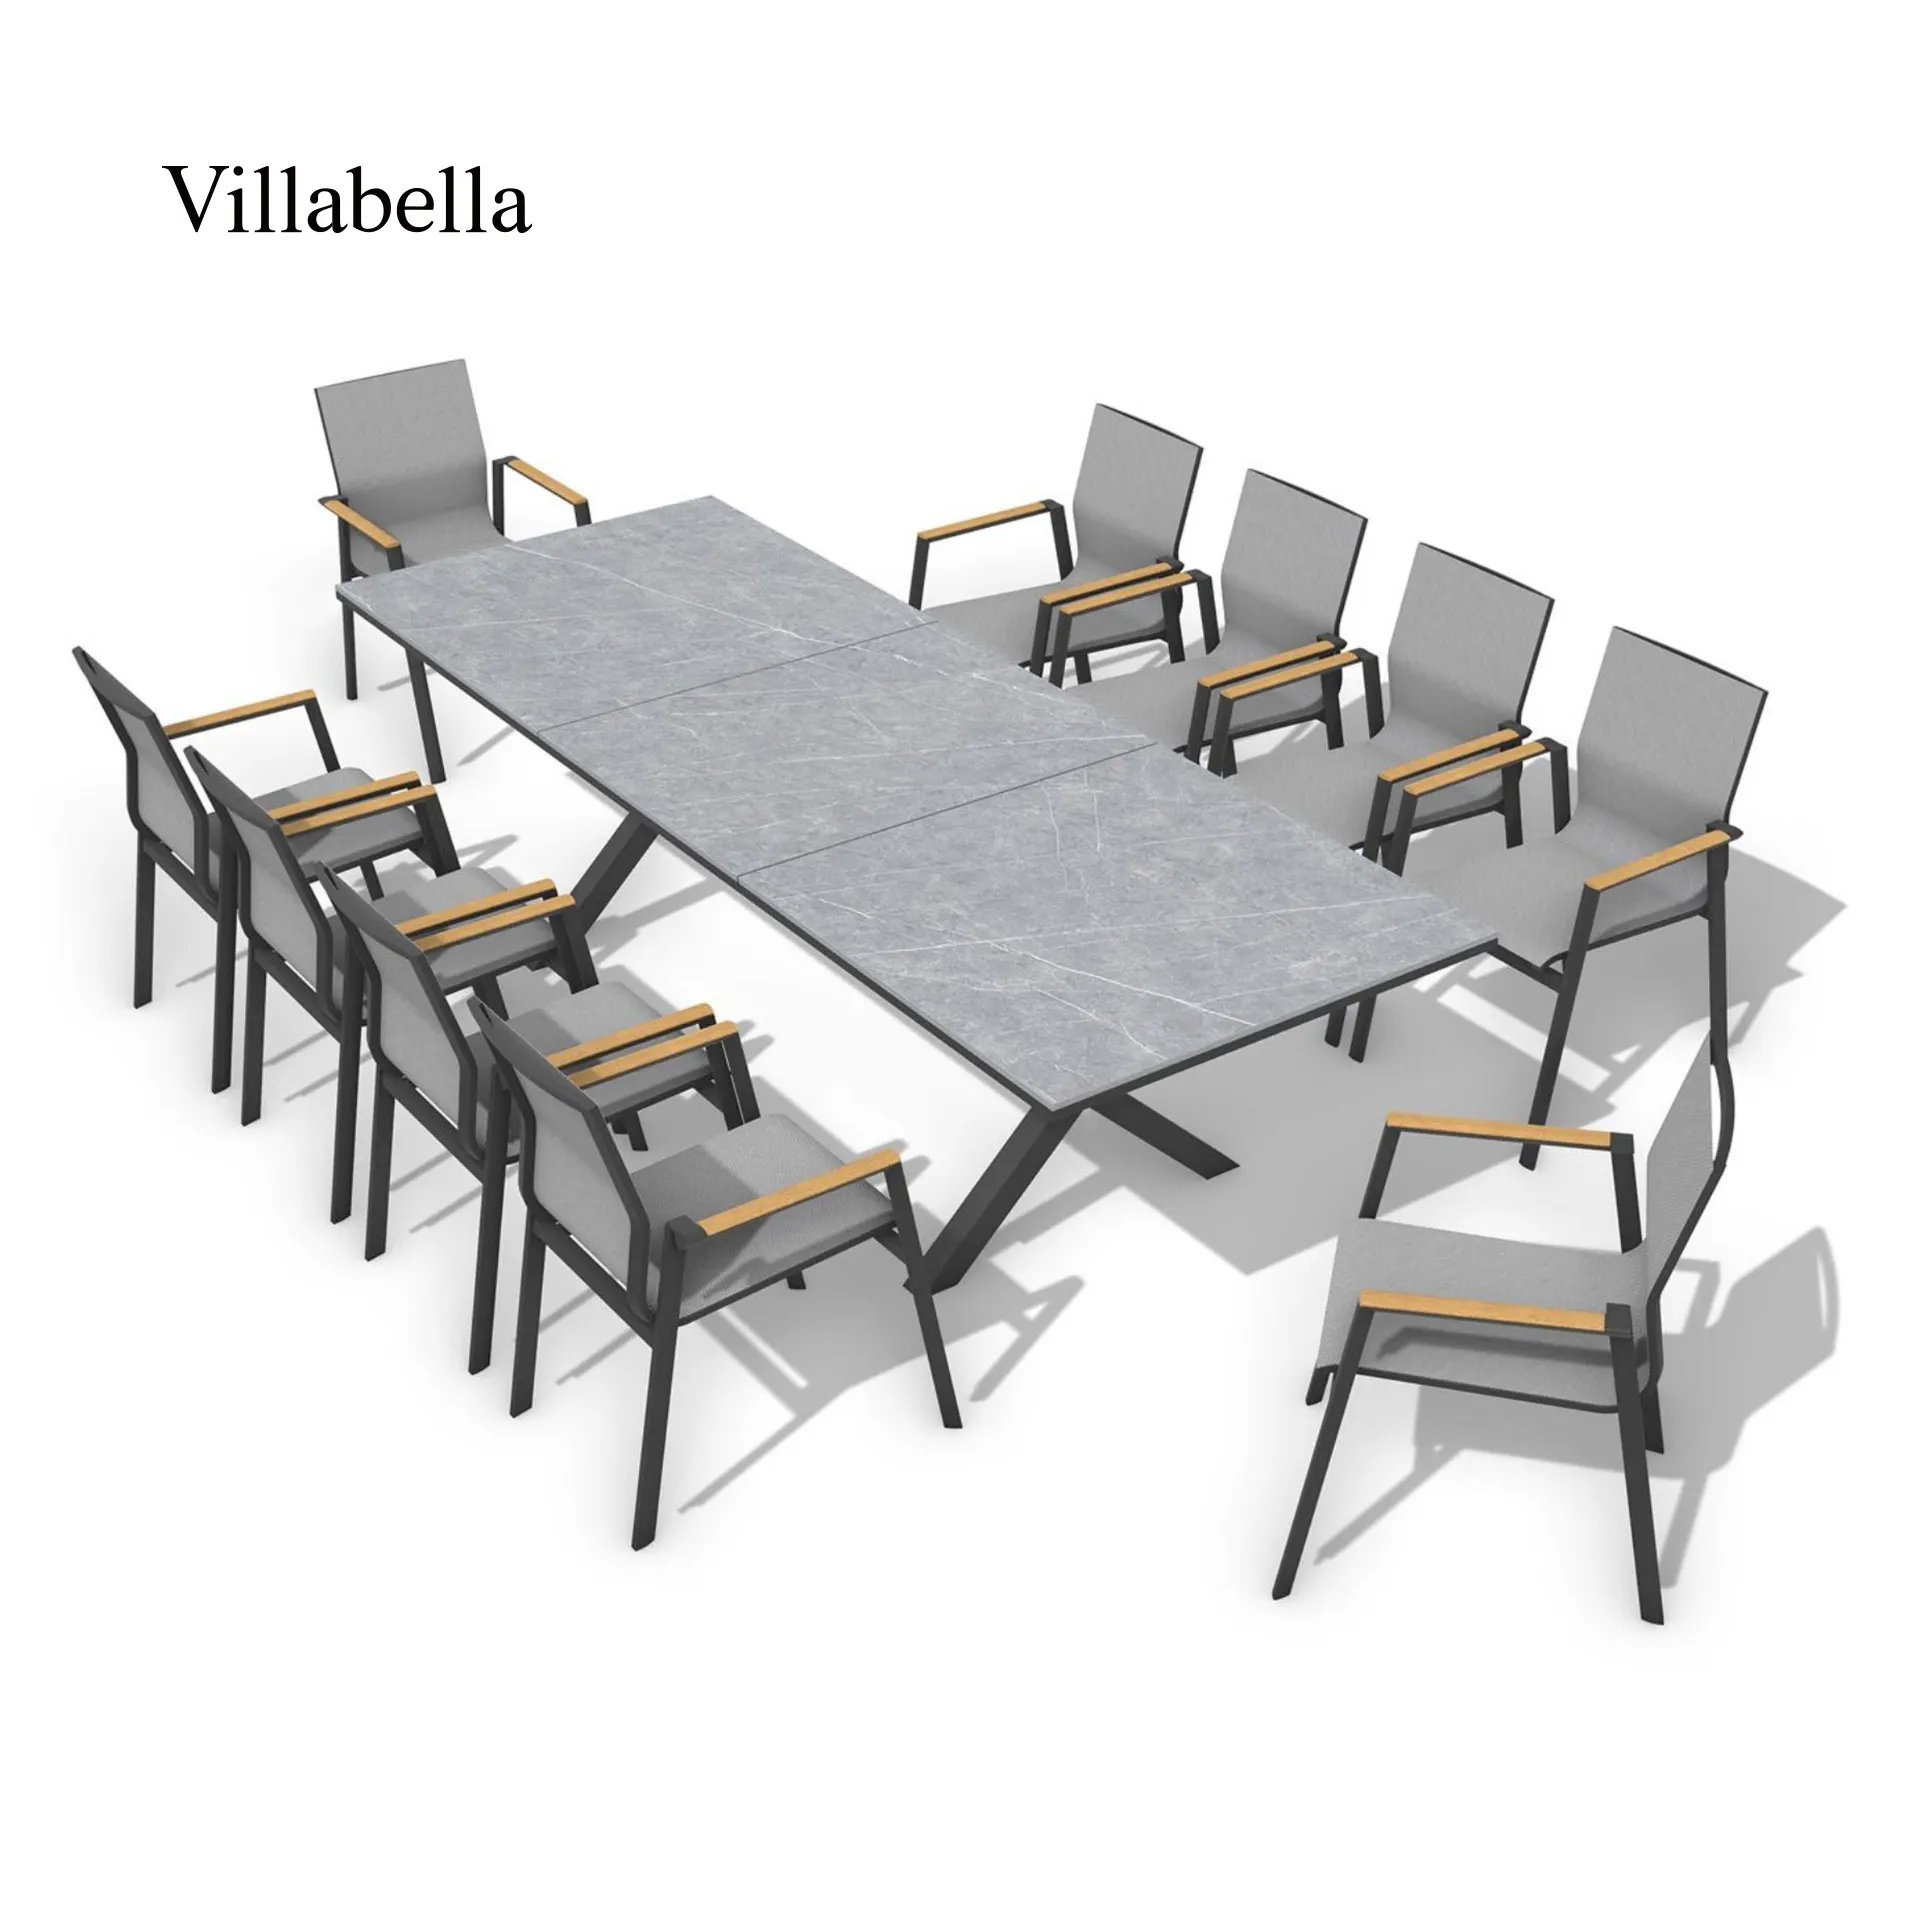 Toptan açık restoran mobilya alüminyum sandalyeler istiflenebilir Sling veranda bahçe masa ve sandalyeler